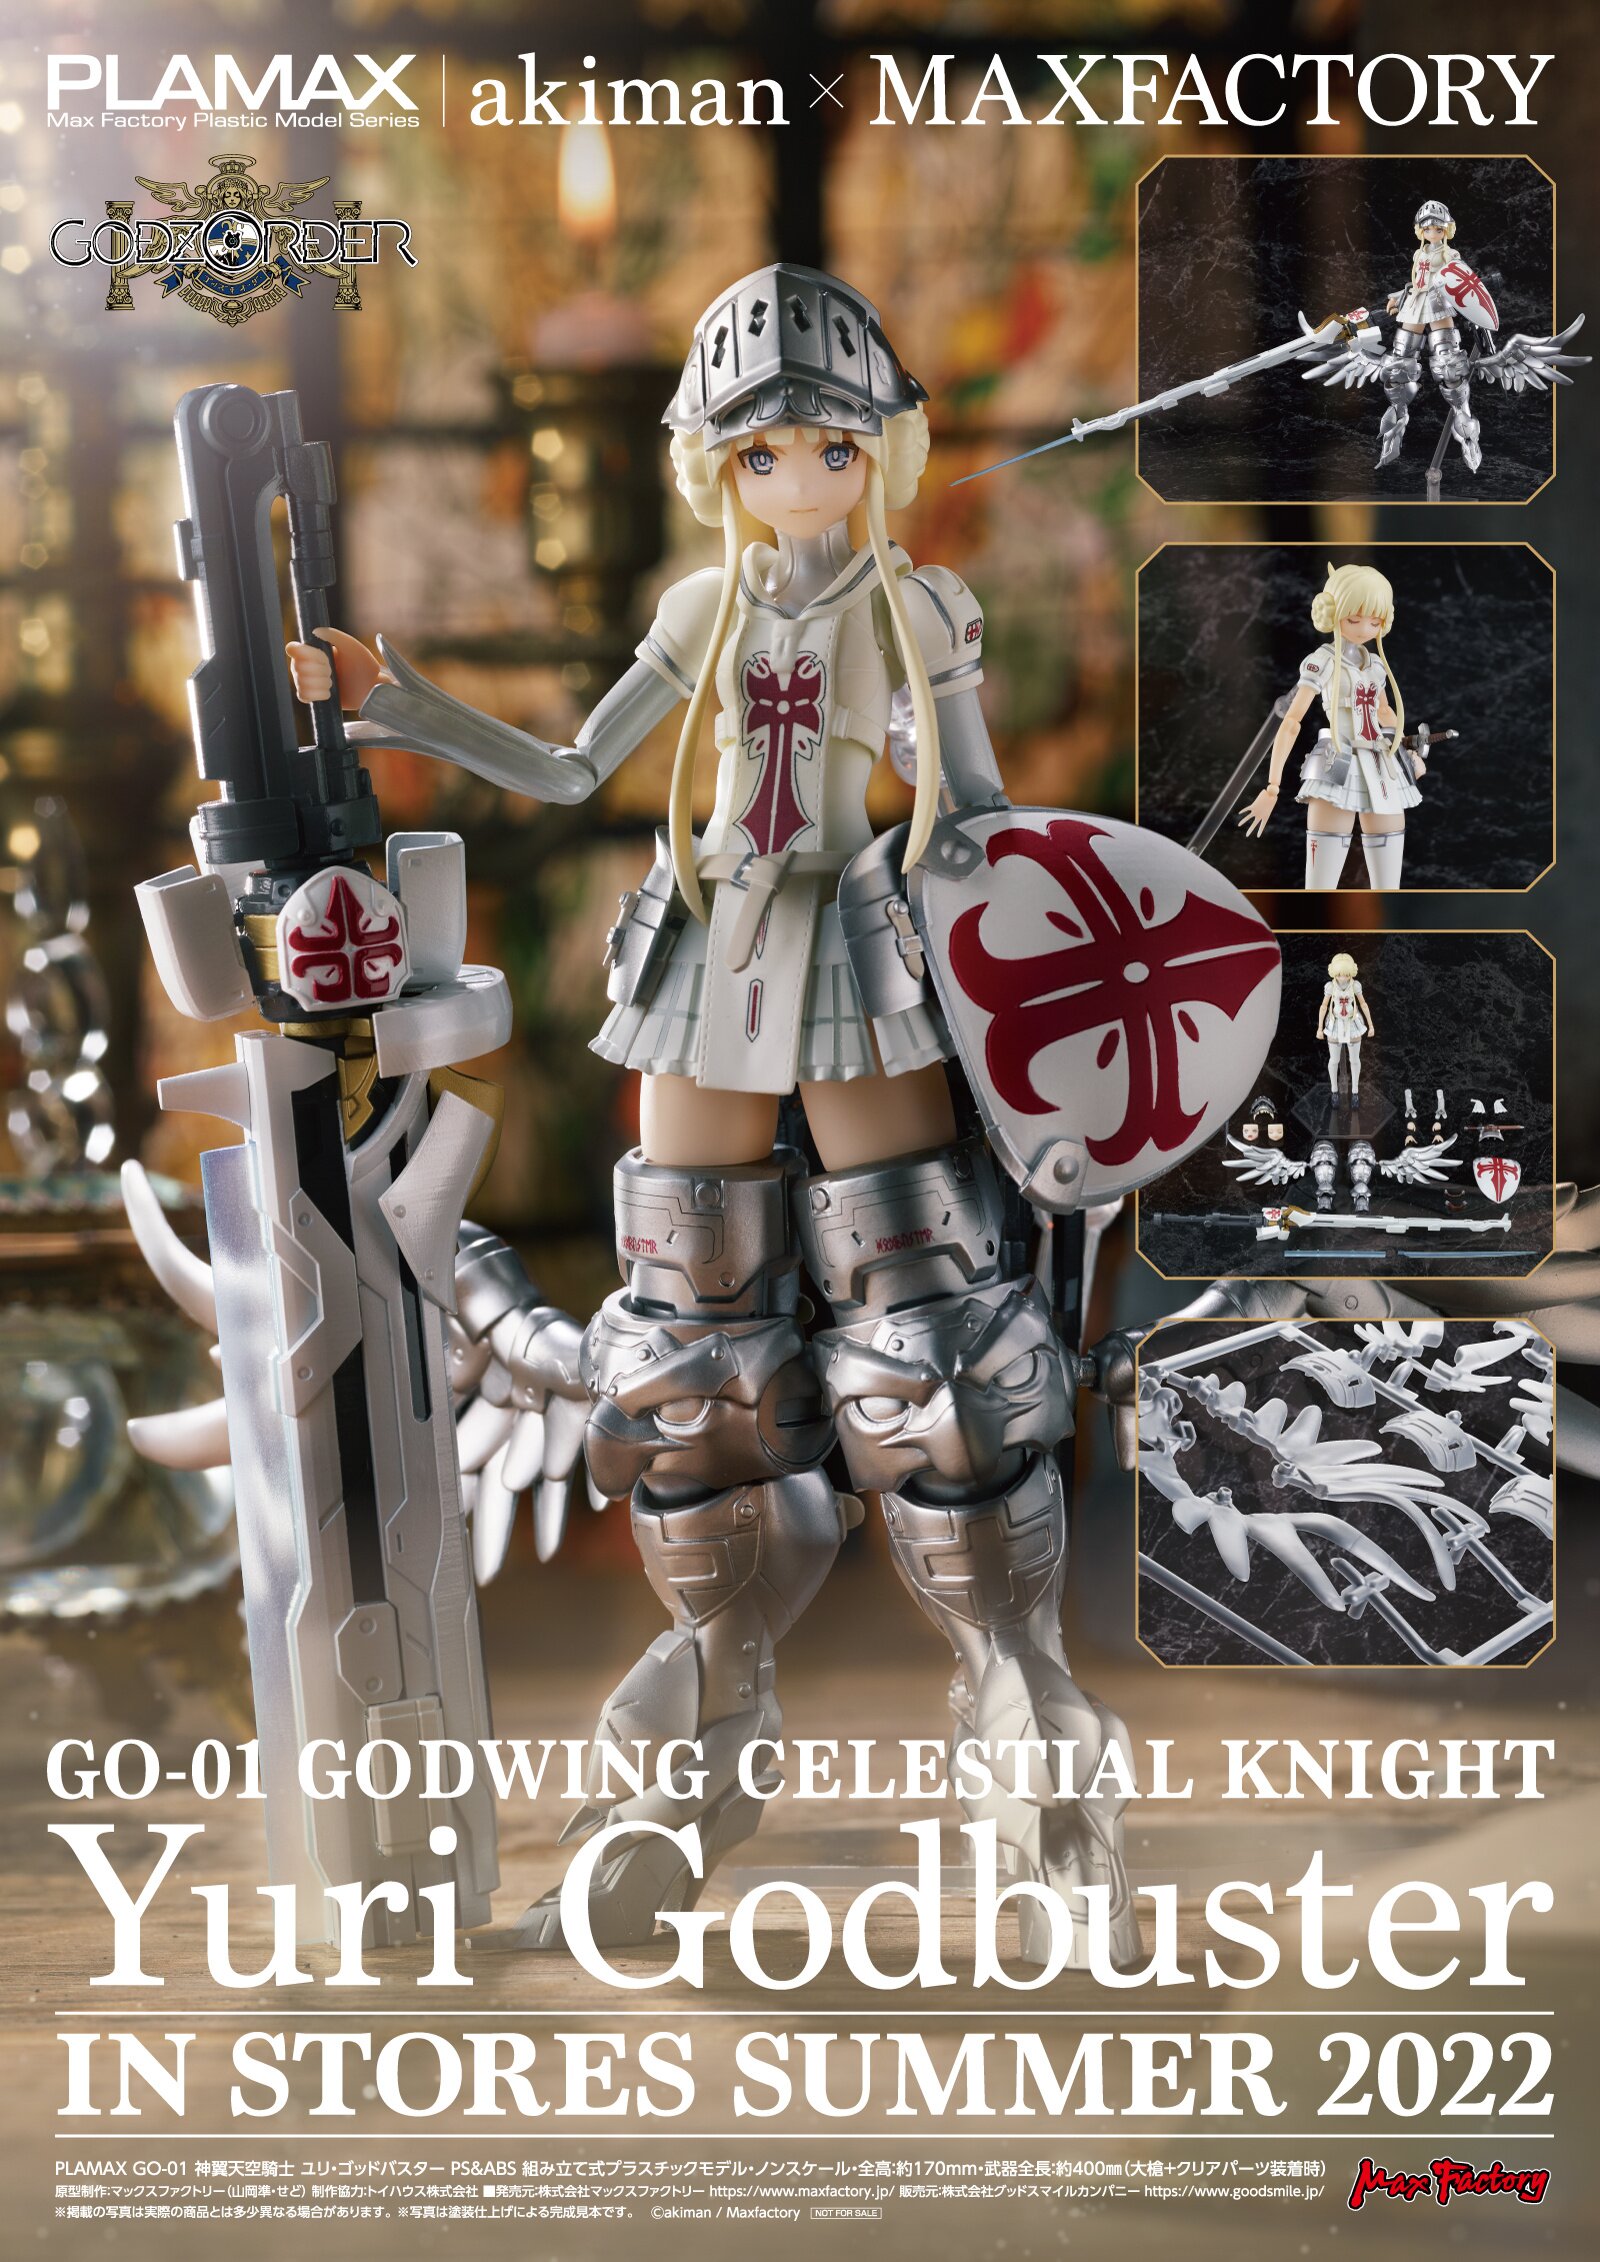 PLAMAX GO-01 Godz Order Godwing Celestial Knight Yuri Godbuster